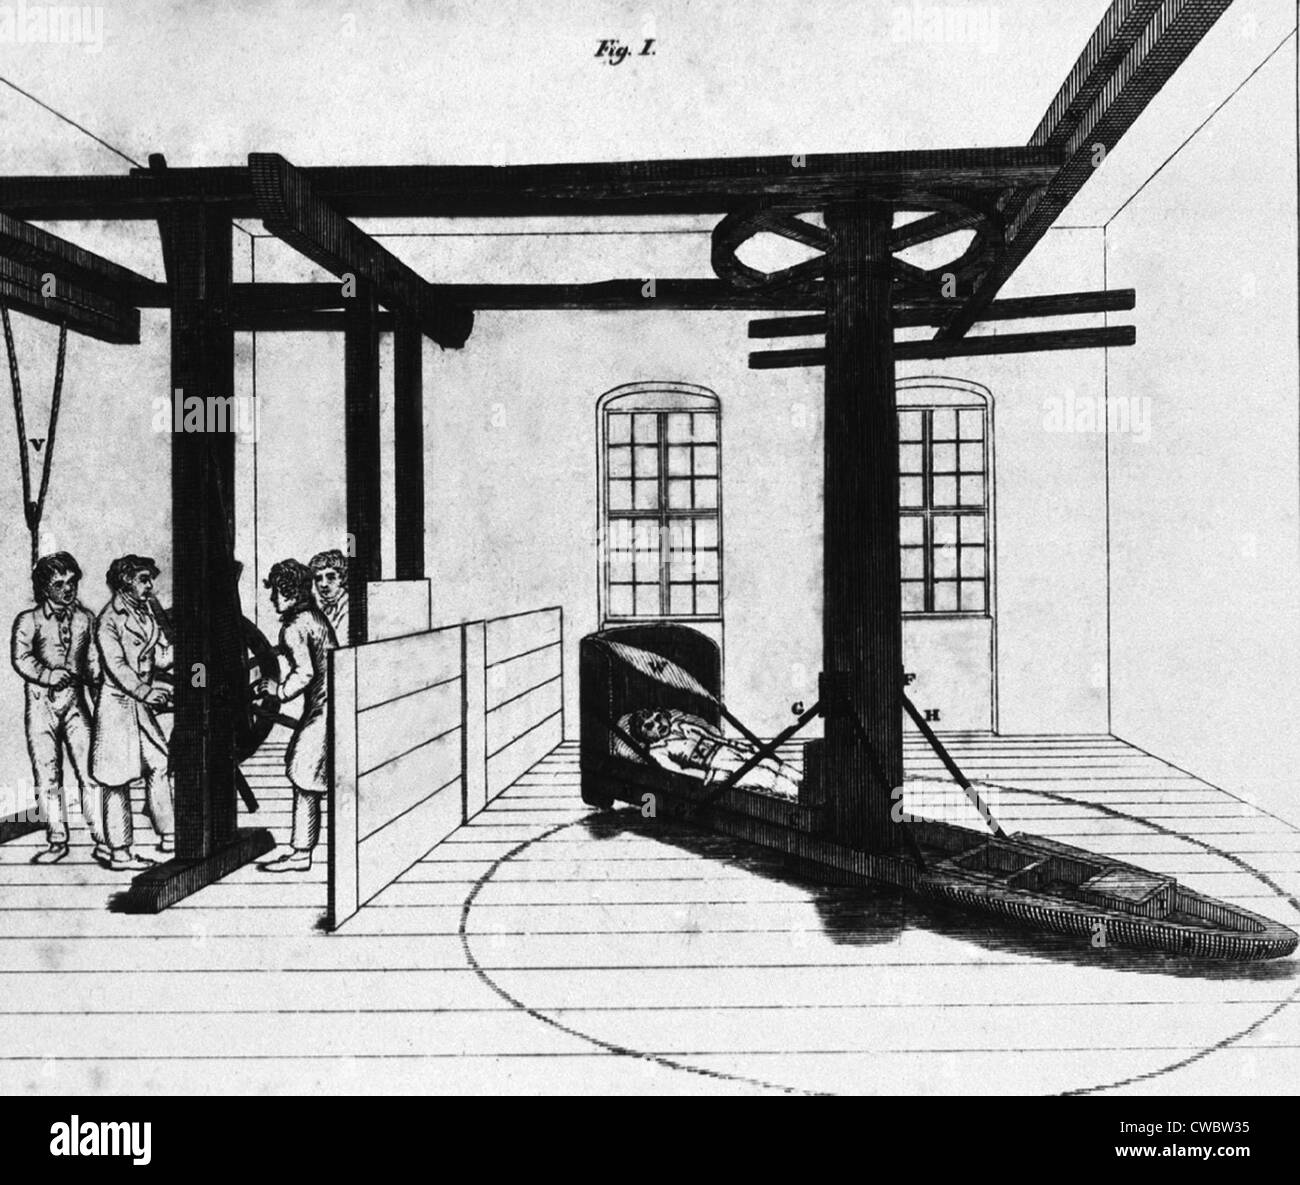 Patient en cours de traitement mentale dans une force centrifuge lit à l'hôpital Charité allemand au début du 19e siècle. Lithographie de Banque D'Images